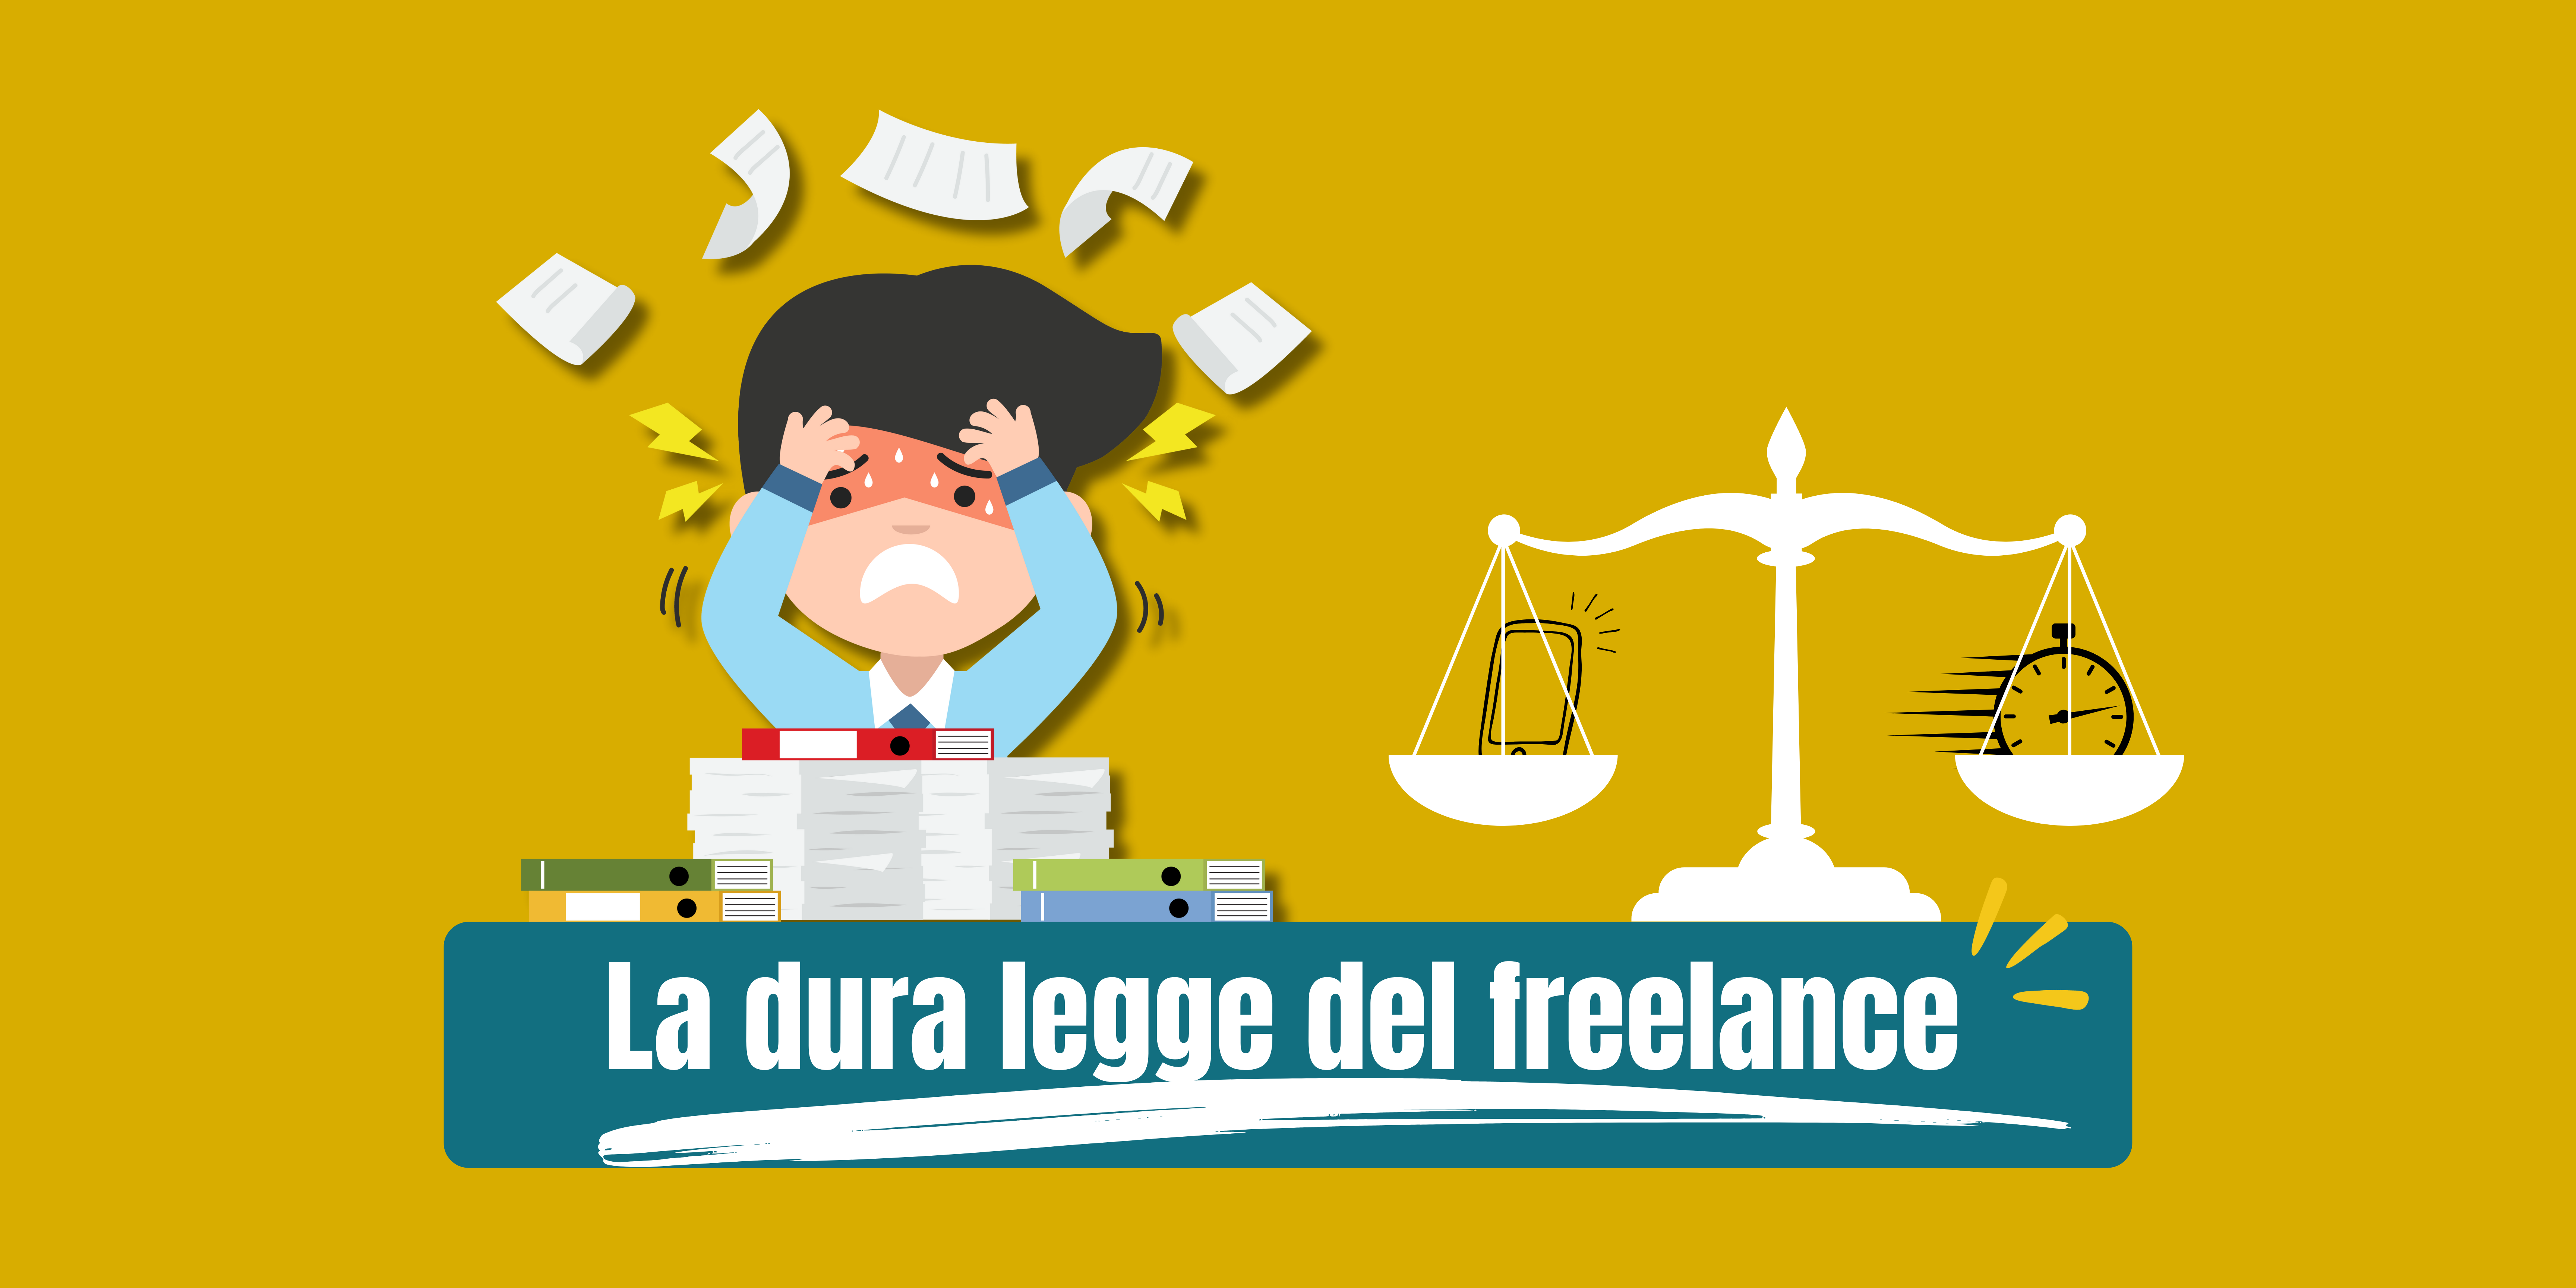 La dura legge del freelance